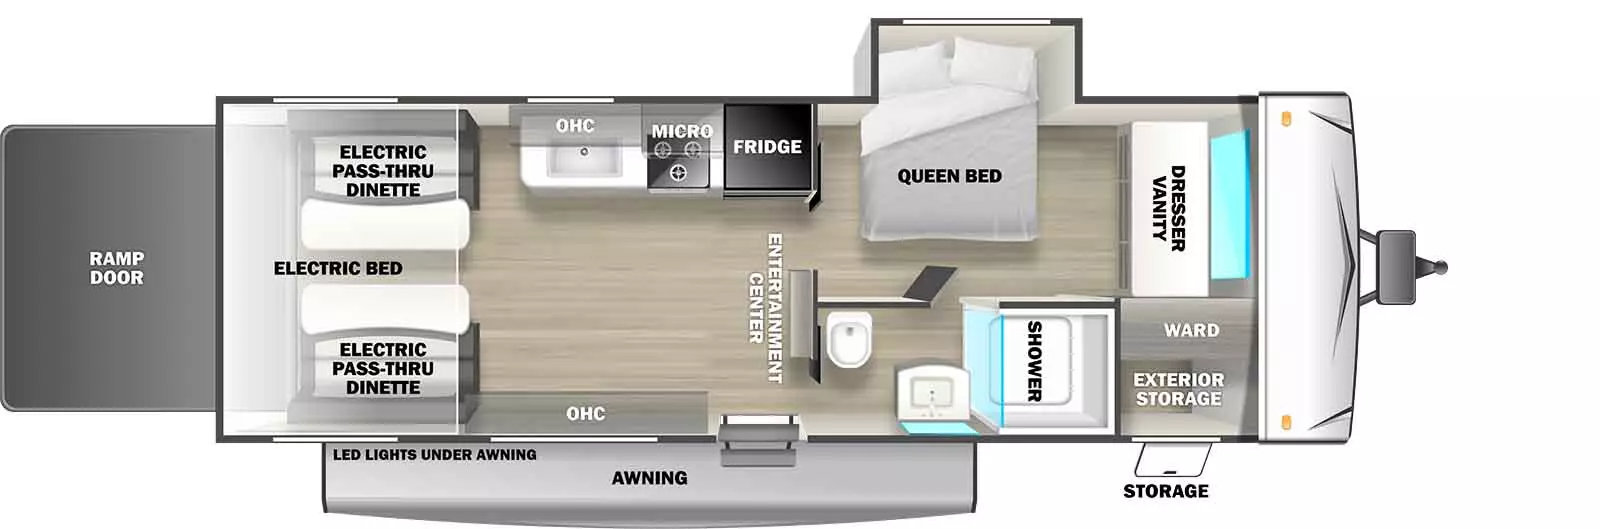 245GSLC - DSO Floorplan Image